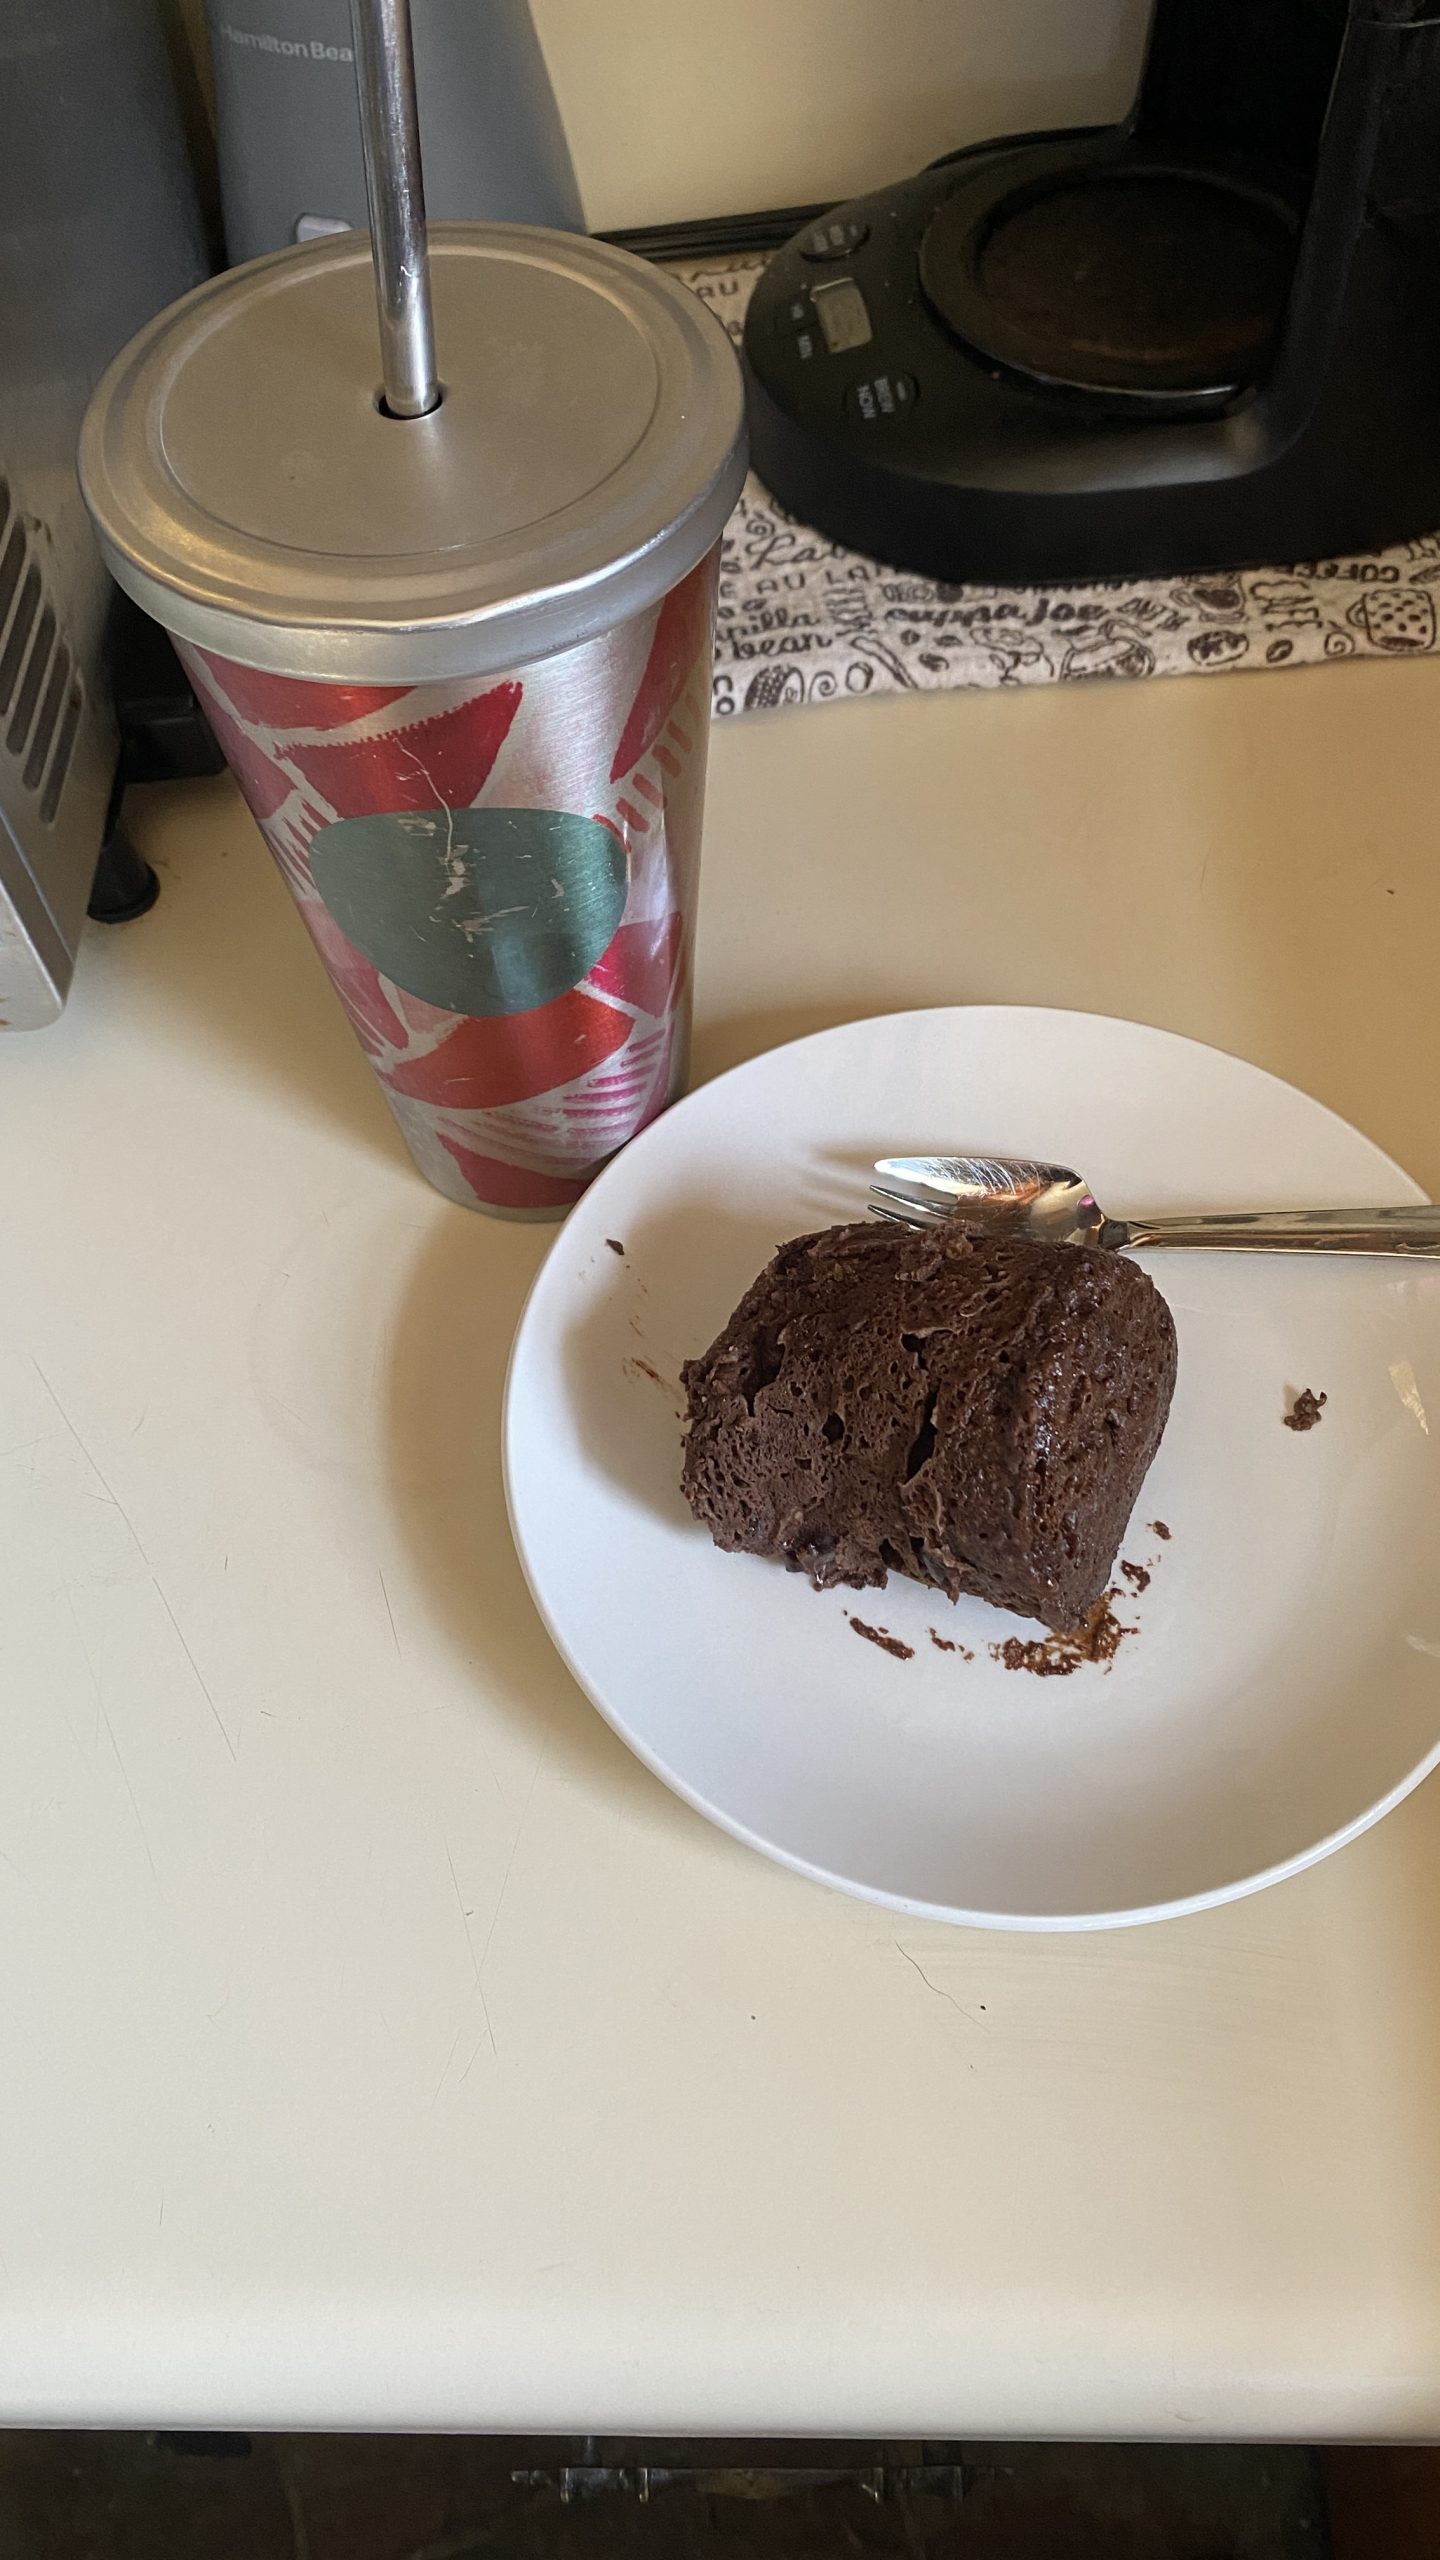 Double chocolate mug cake on a plate